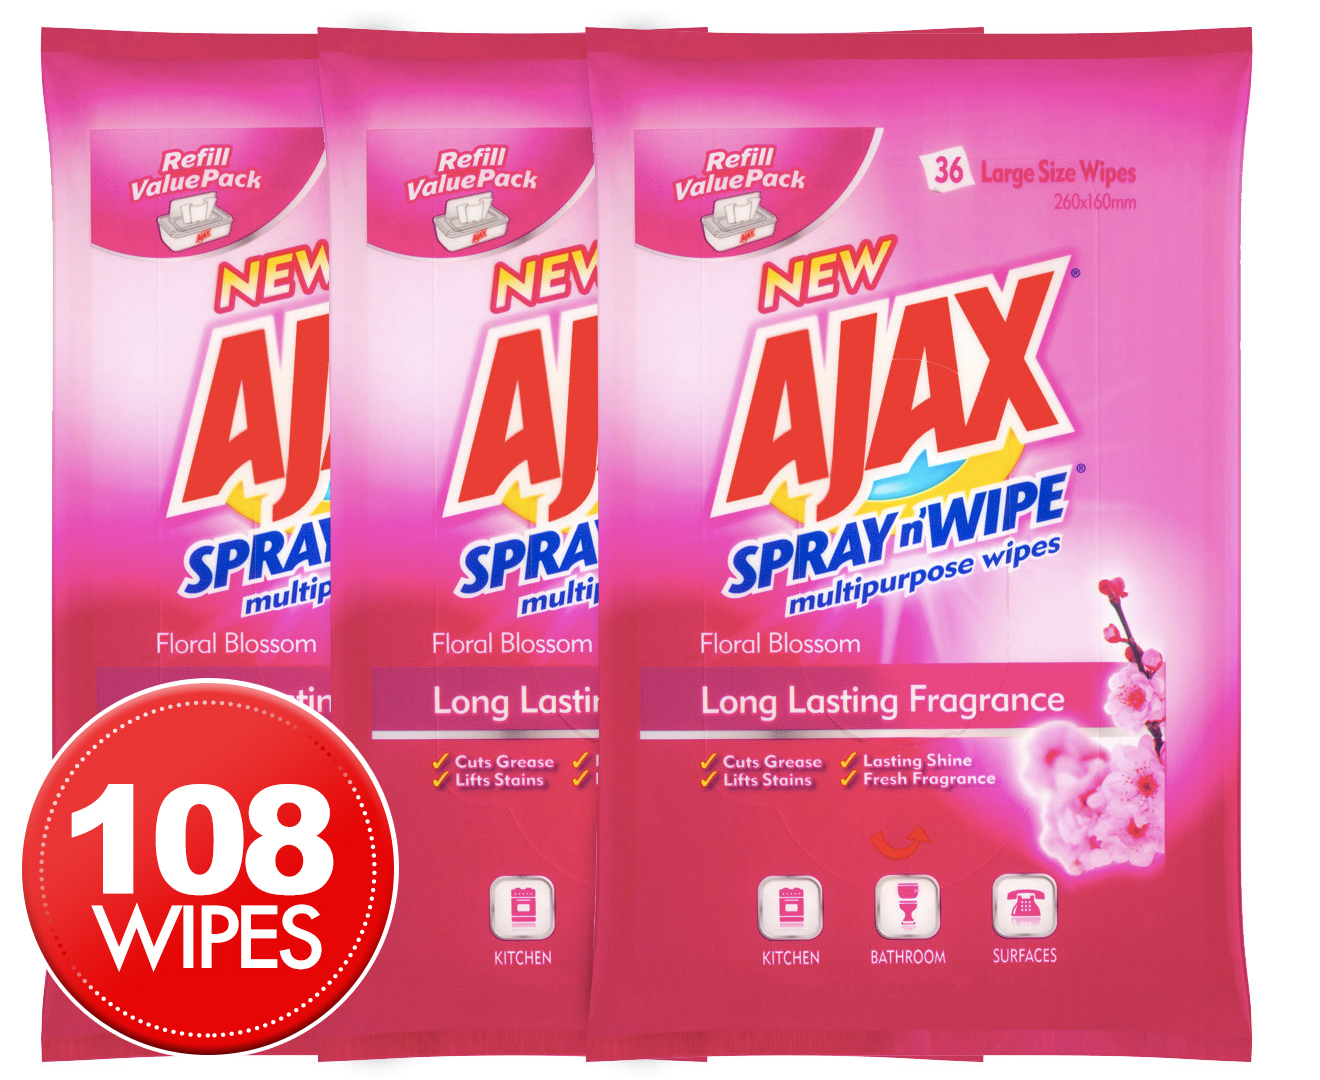 3 x Ajax Spray n' Wipe Multipurpose Wipe 36pk